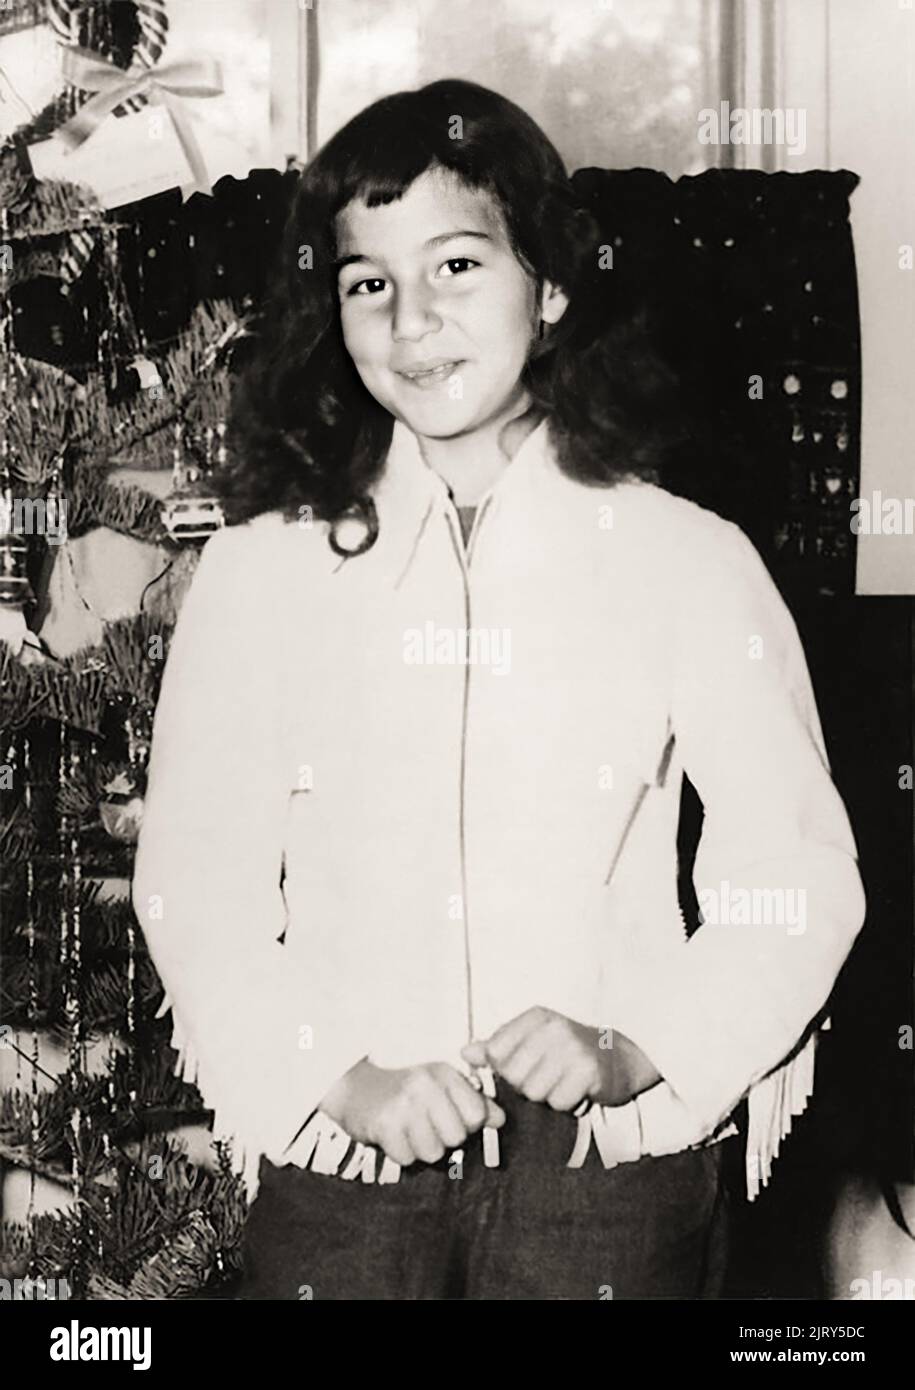 1956 , décembre , USA : la célèbre chanteuse et actrice pop américaine CHER ( Cherilyn Sarkisian LaPierre , née le 20 mai 1946 ) quand était une jeune fille de 10 ans à Noël . Photographe inconnu. - HISTOIRE - FOTO STORICHE - Personalità da giovane giovani - ragazza - personnalités quand était jeune fille - FANTAZIA - ENFANCE - MUSIQUE POP - MUSICA - cantante - BAMBINI - BAMBINA - ENFANT - ENFANTS - BAMBINO - ENFANCE - INFANZIA - sourire - sorriso - ALBERO DI NATALE - arbre de Noël --- ARCHIVIO GBB Banque D'Images